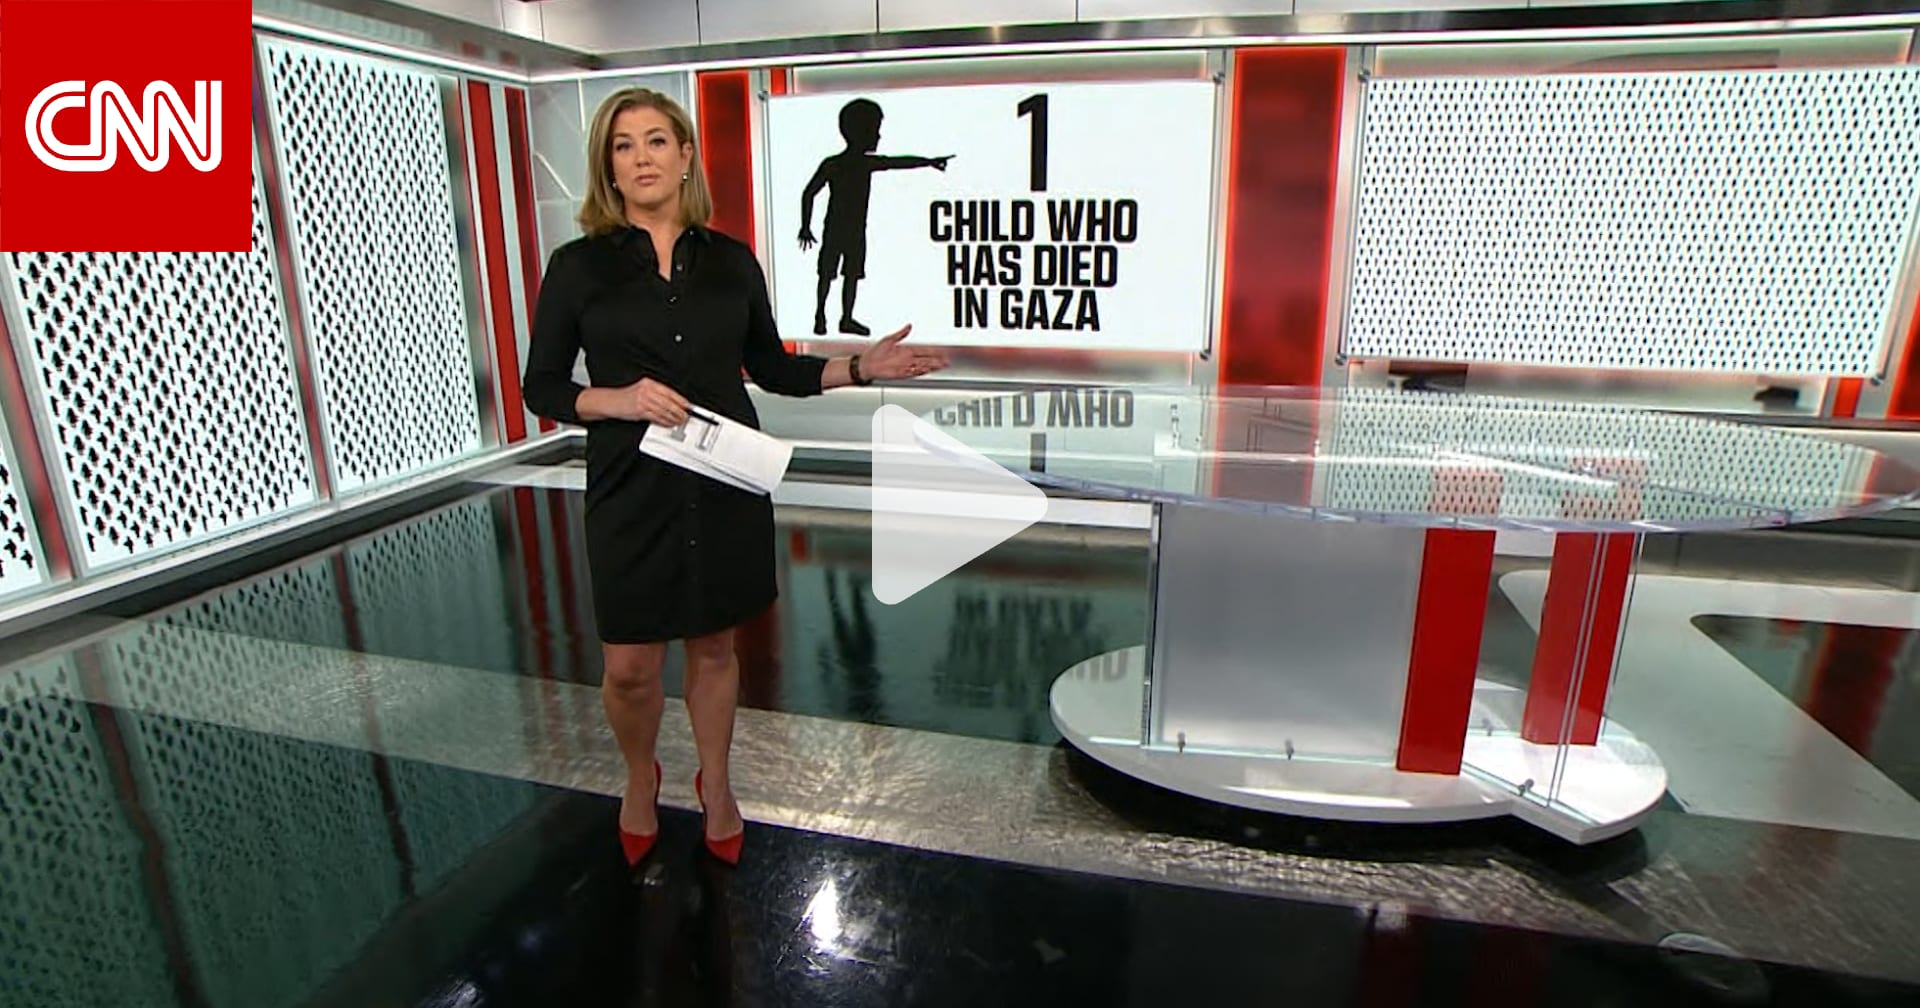 داخل استوديو CNN.. عرض رموز تمثل عدد أطفال غزة الذين قتلوا في الحرب